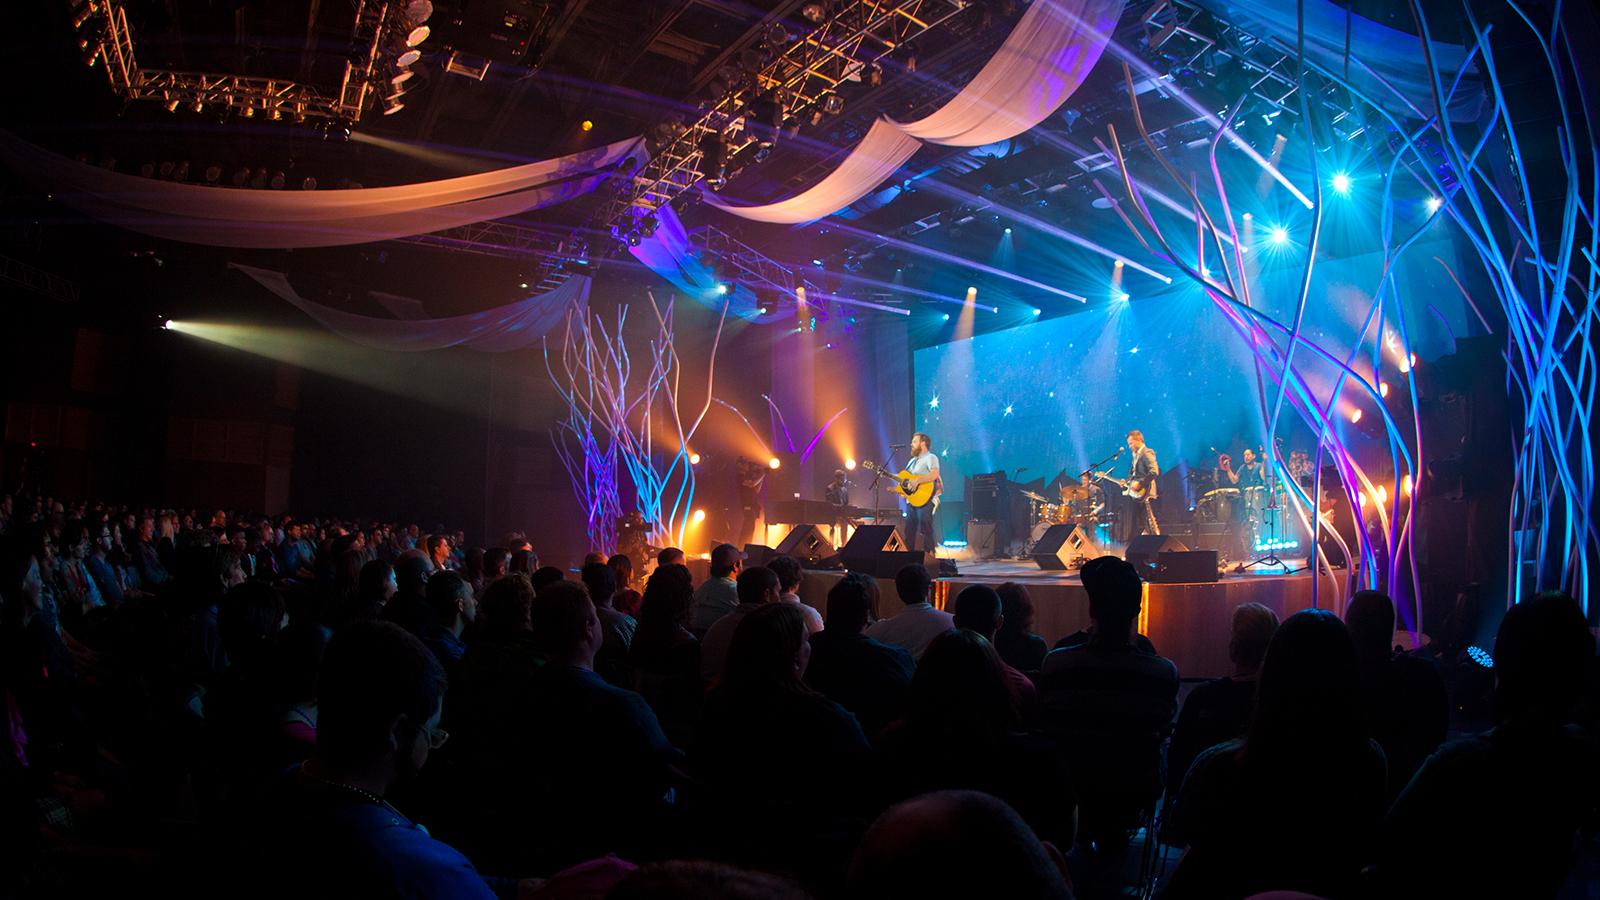 乐队在一个大音乐厅演奏音乐, 黑暗的礼堂里有几盏明亮的蓝色和紫色的灯指向舞台.